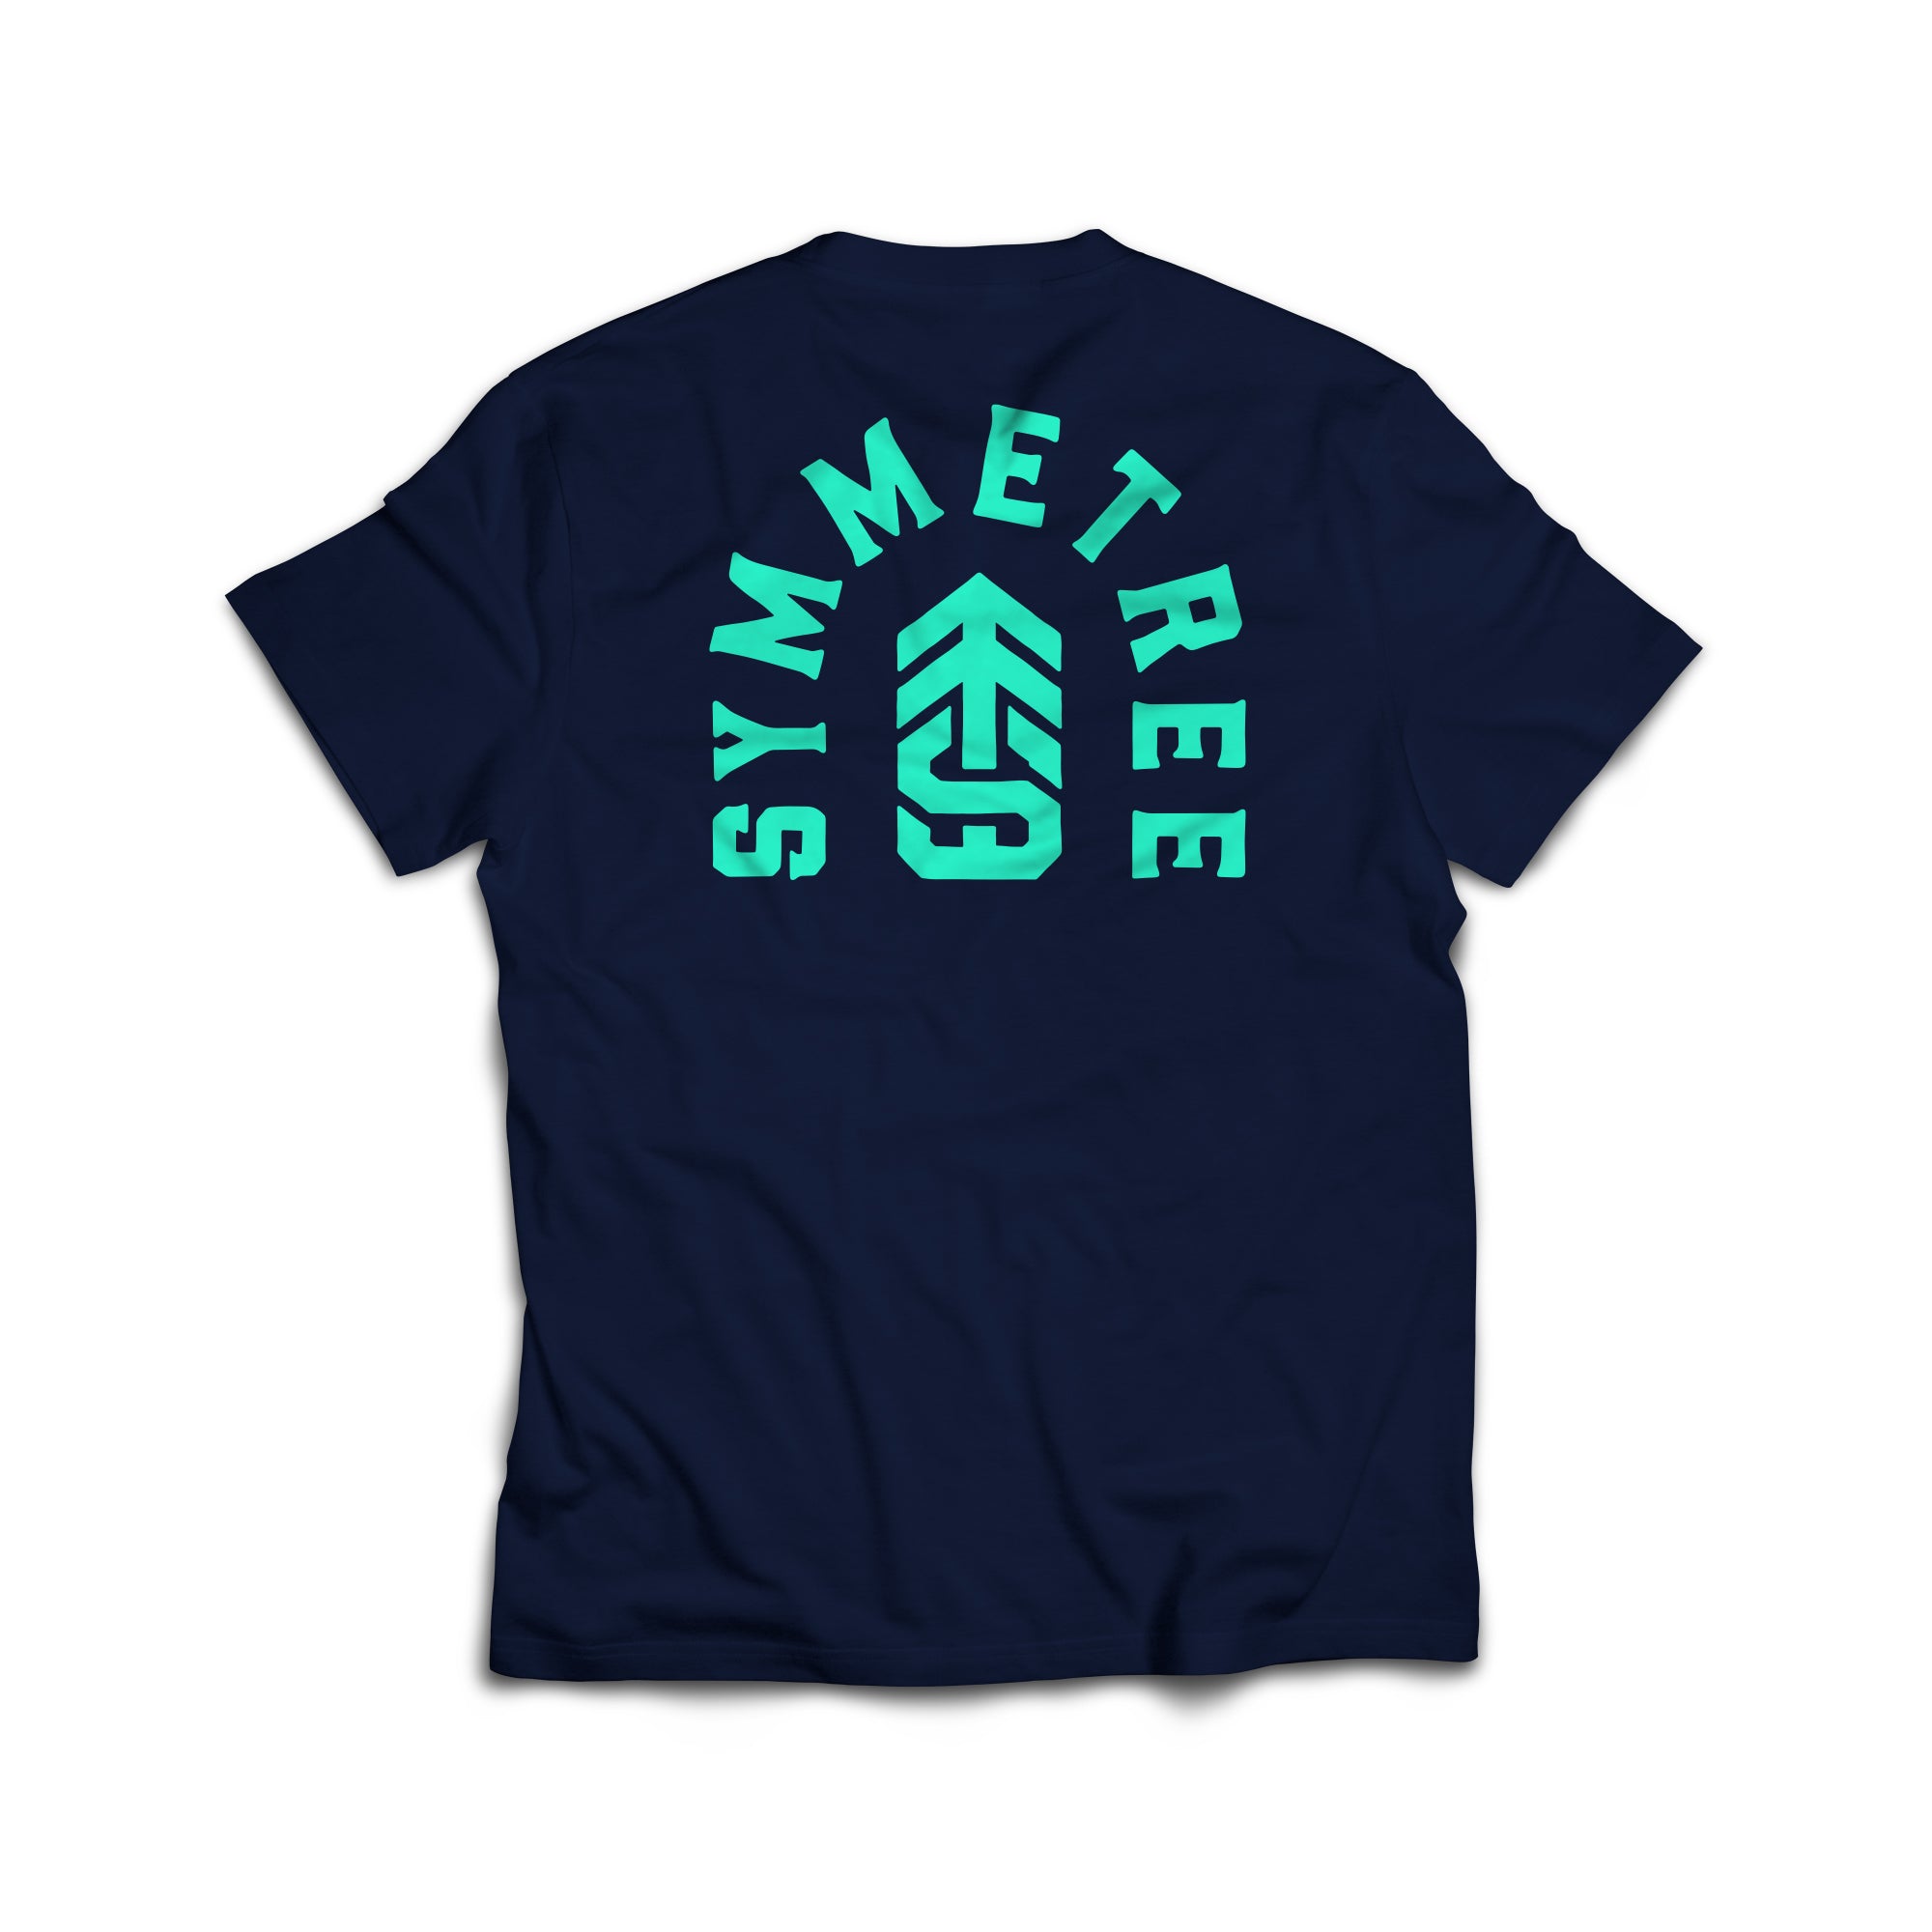 Unisex 'Logo Shirt' - text logo front, tree logo back